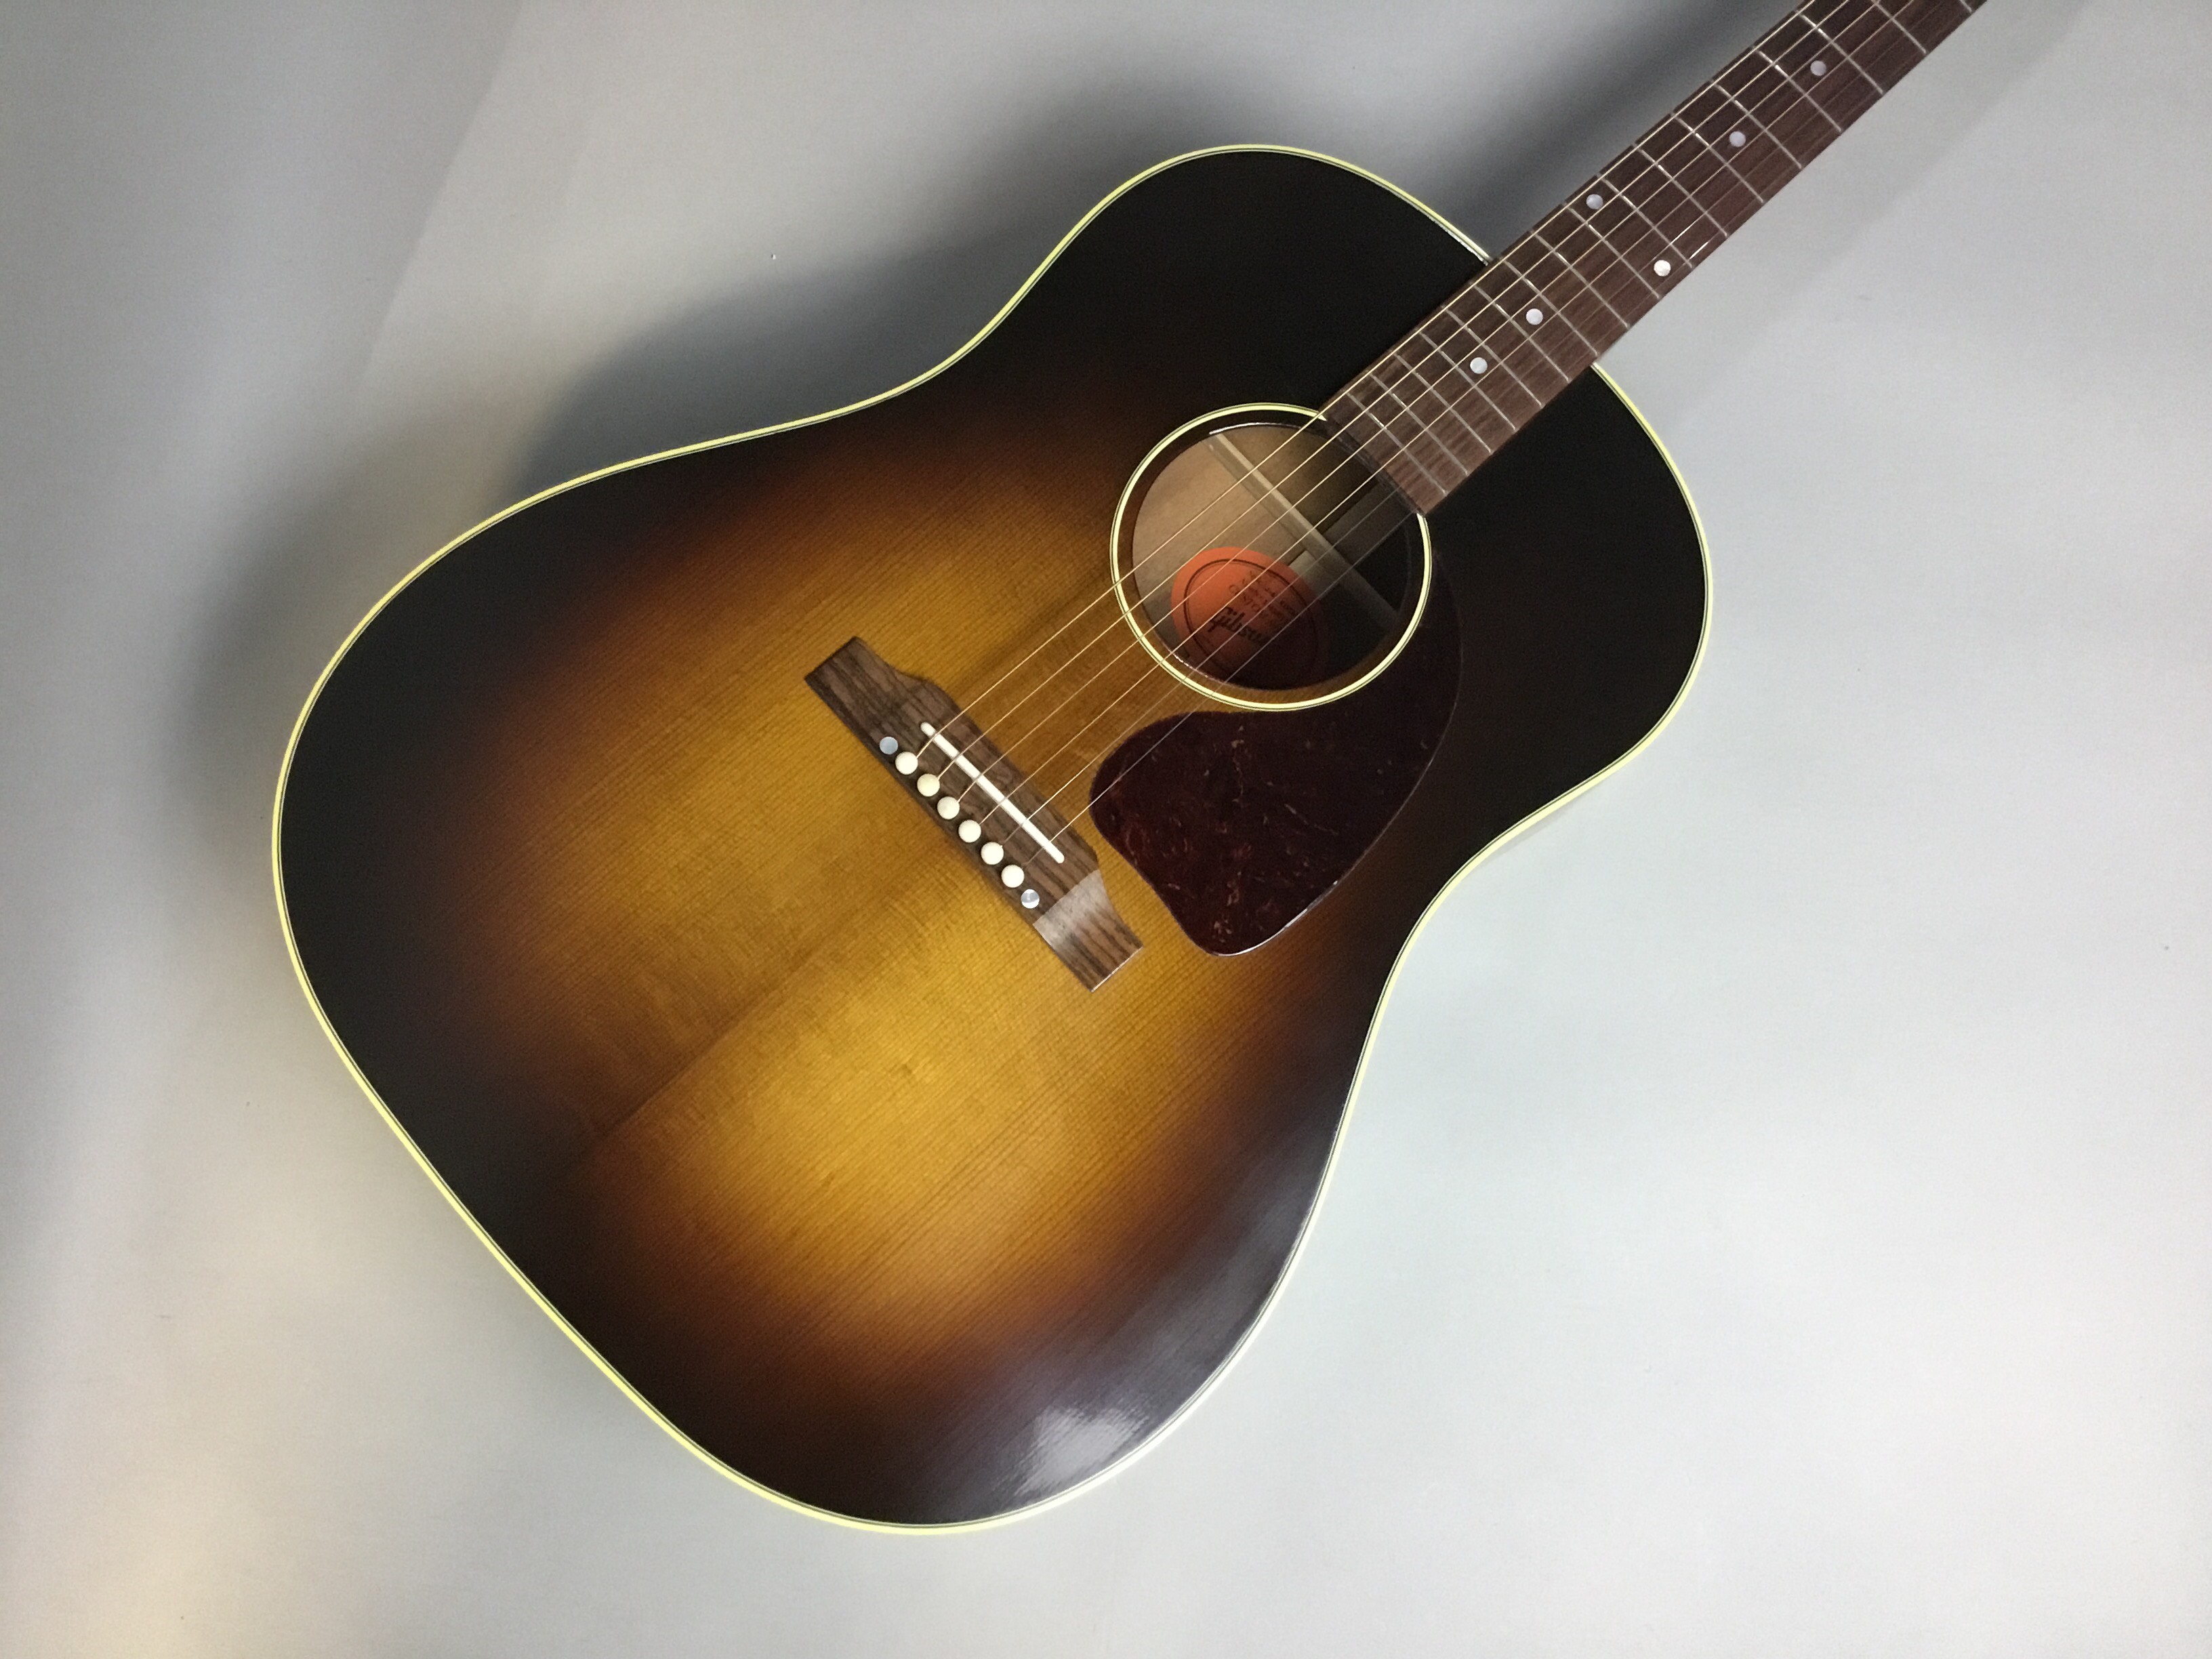 アコースティックギター担当の三枝です。Gibsonの良いギターが入荷しましたので皆様にお知らせします！ *Gibson J-45 Vintage |*メーカー|*型名|*販売価格(税込)| |Gibson|J-45 Vintage|[!￥486,864(税込)!]|